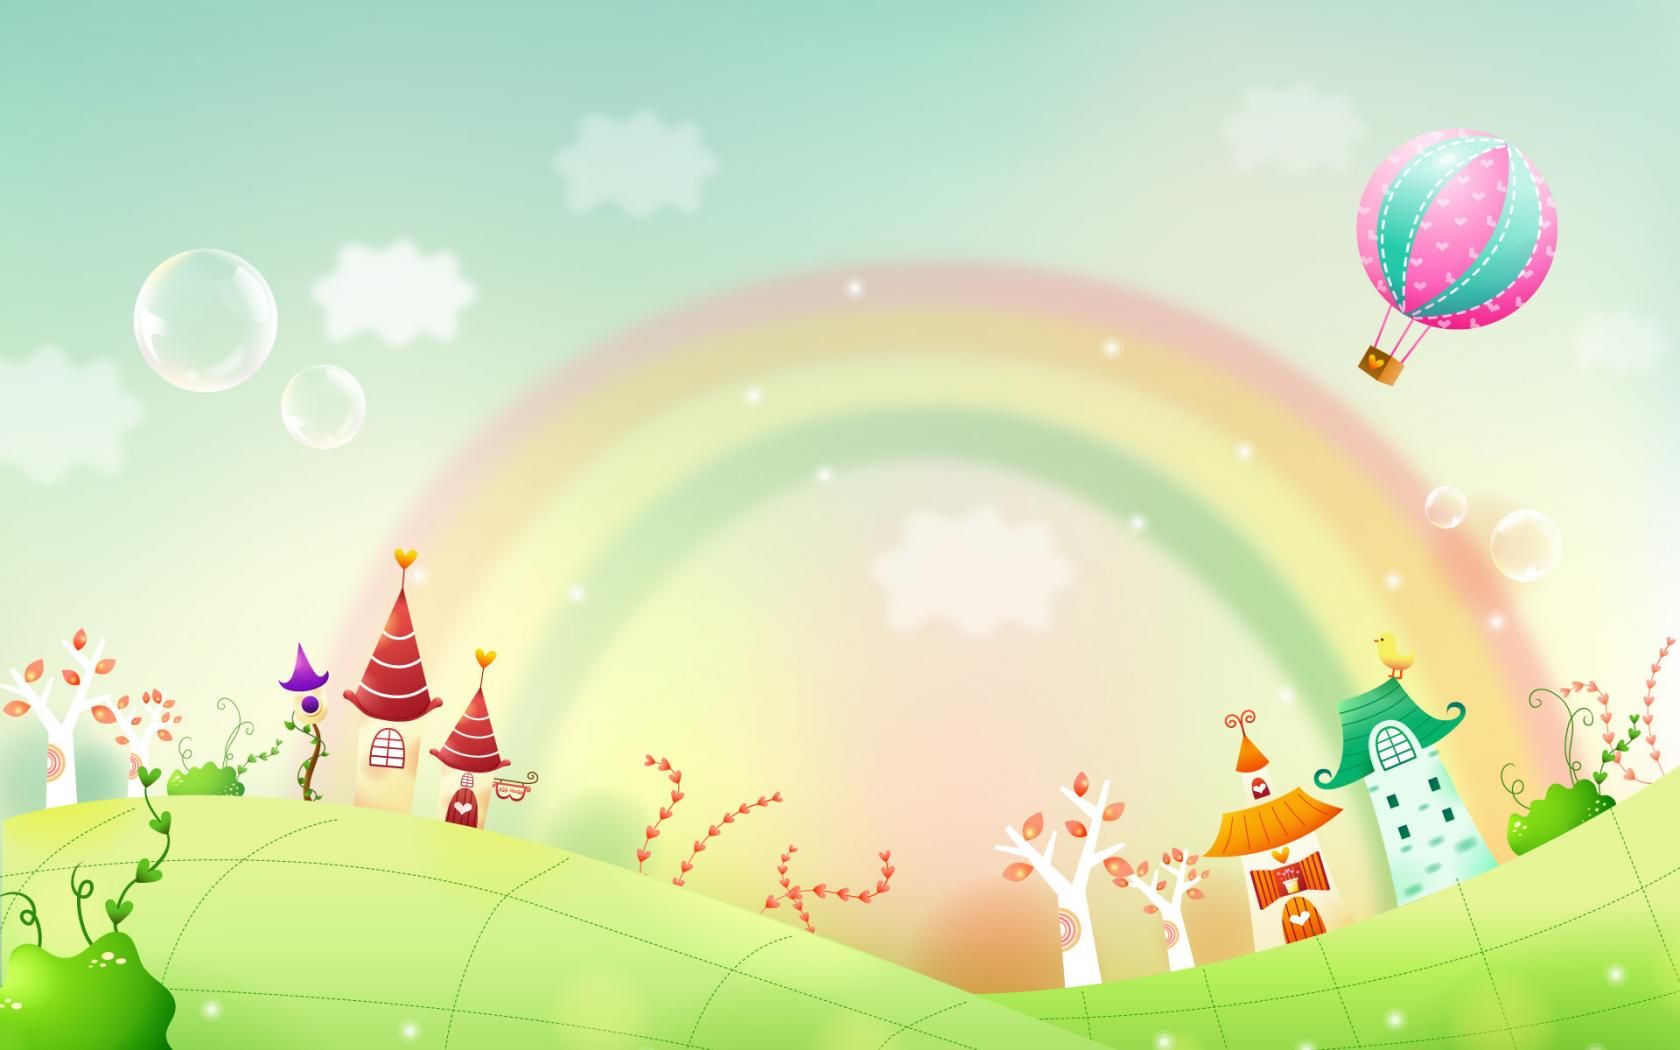 wallpapers de dibujos animados,sky,illustration,rainbow,balloon,hot air balloon